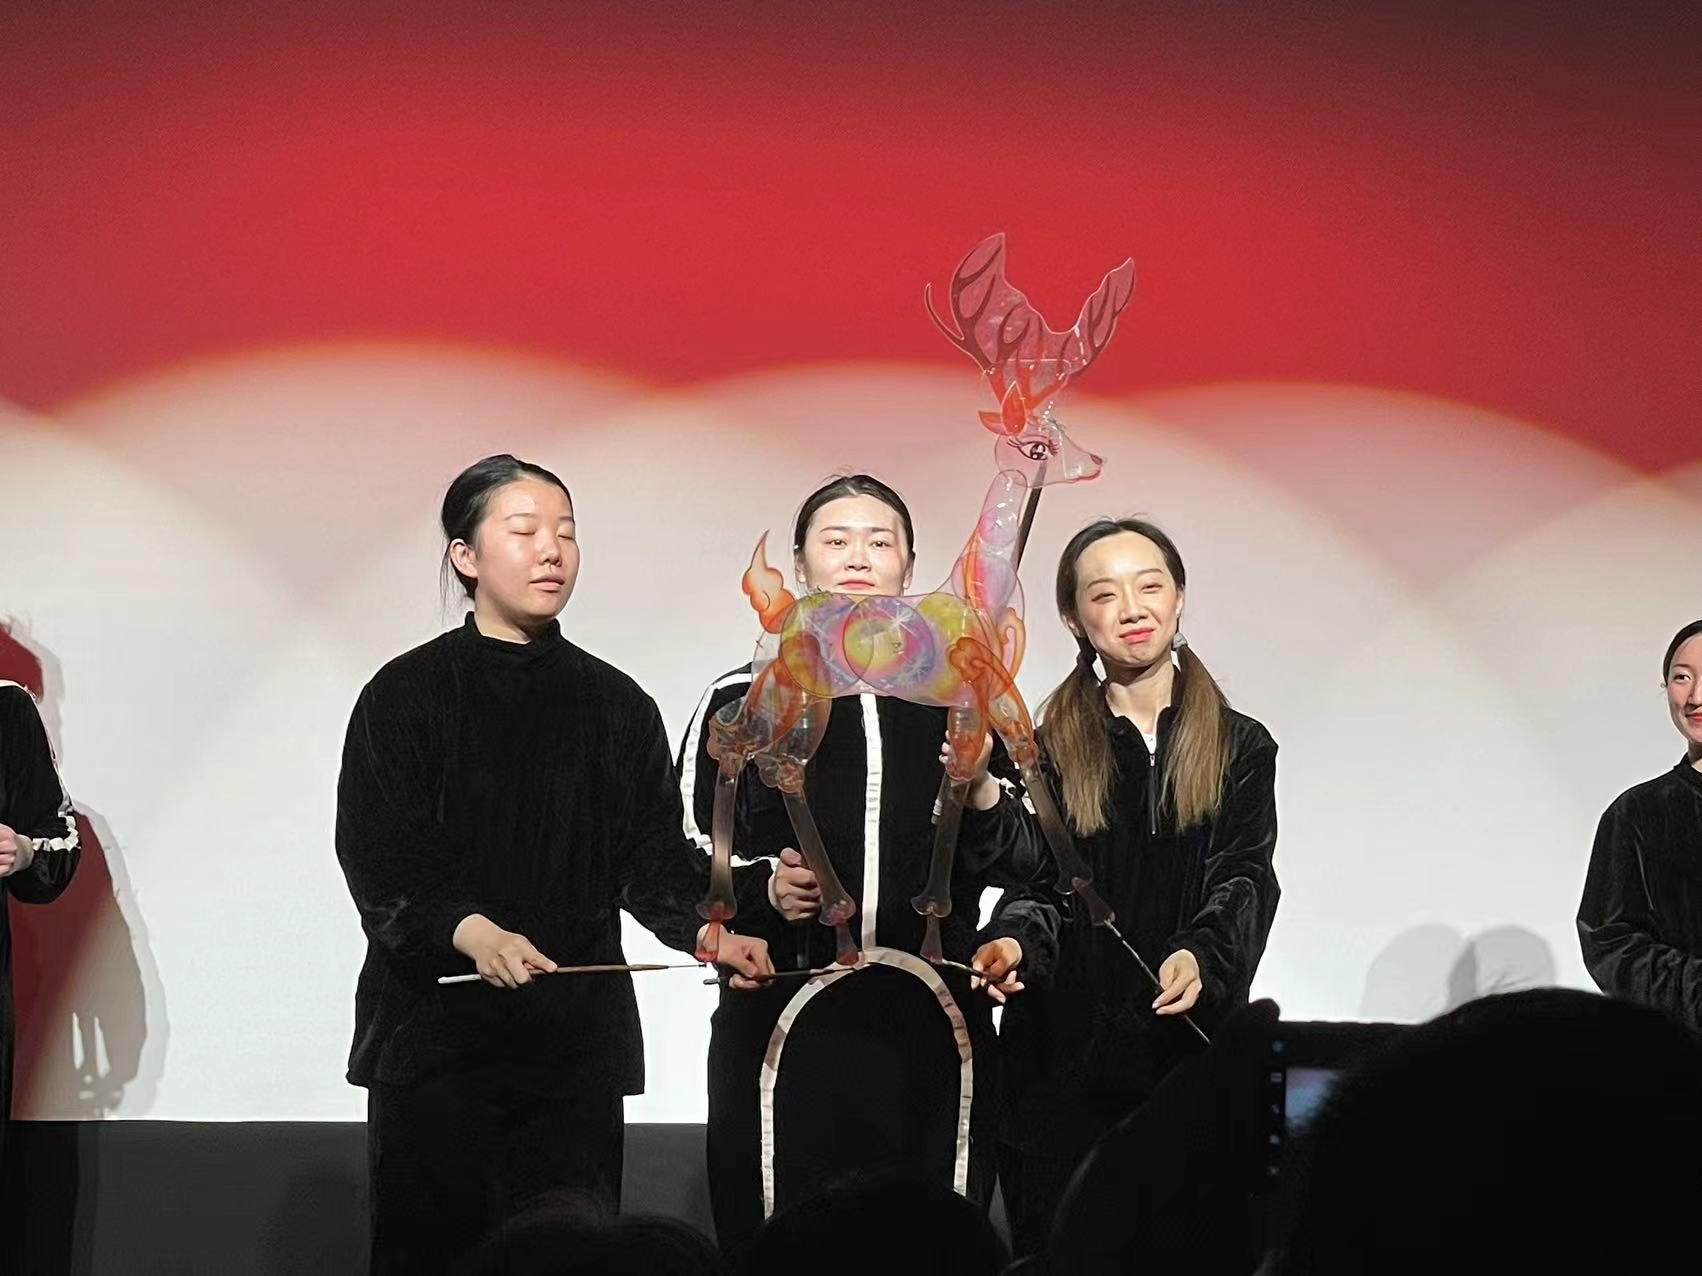 上海木偶剧团海派多媒体皮影戏《九色鹿》